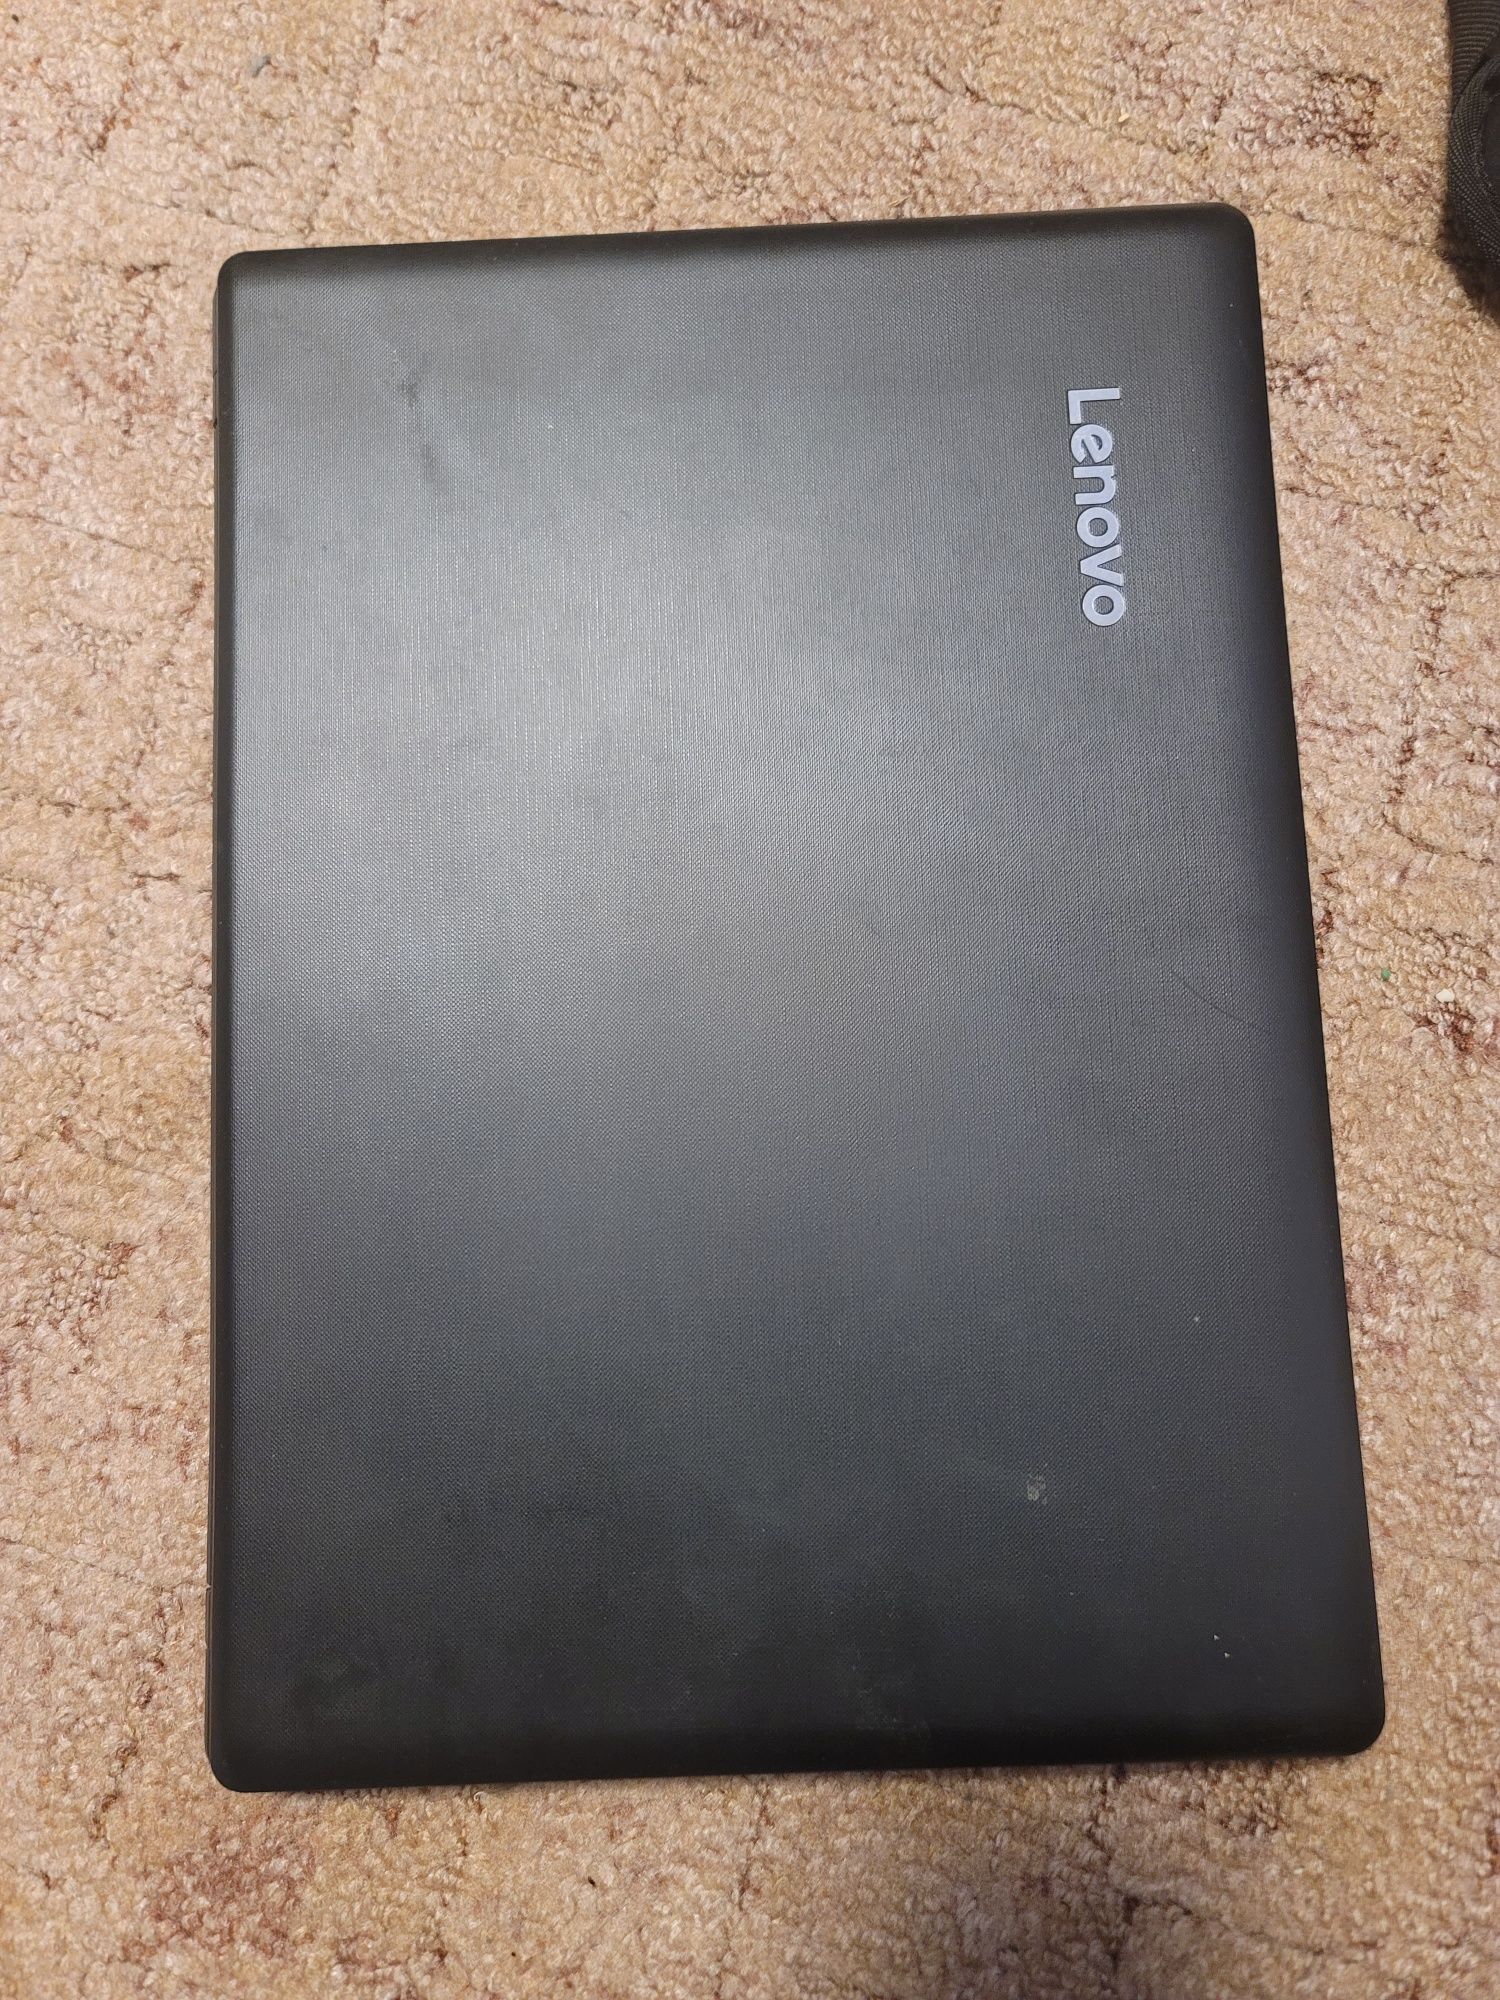 НоНоутбук Lenovo ideapad 110-14IBR
Процессор Intel Pentiu